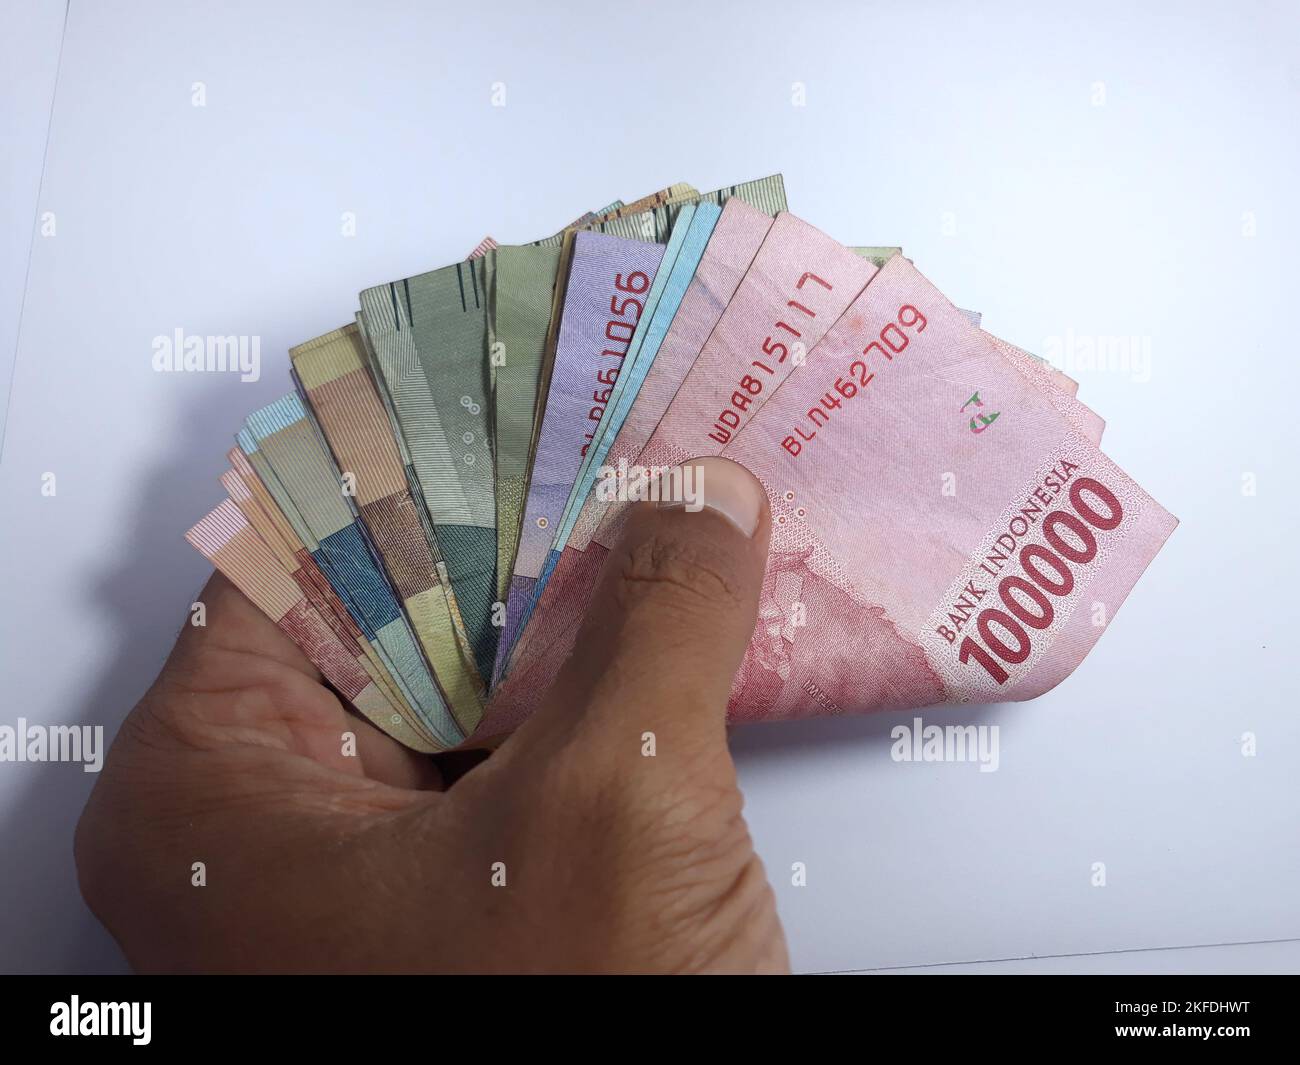 Nahaufnahme isoliert auf weißer Hand, mit mehreren auf Rupien lautenden Banknoten. Rupiah ist die Währung Indonesiens Stockfoto